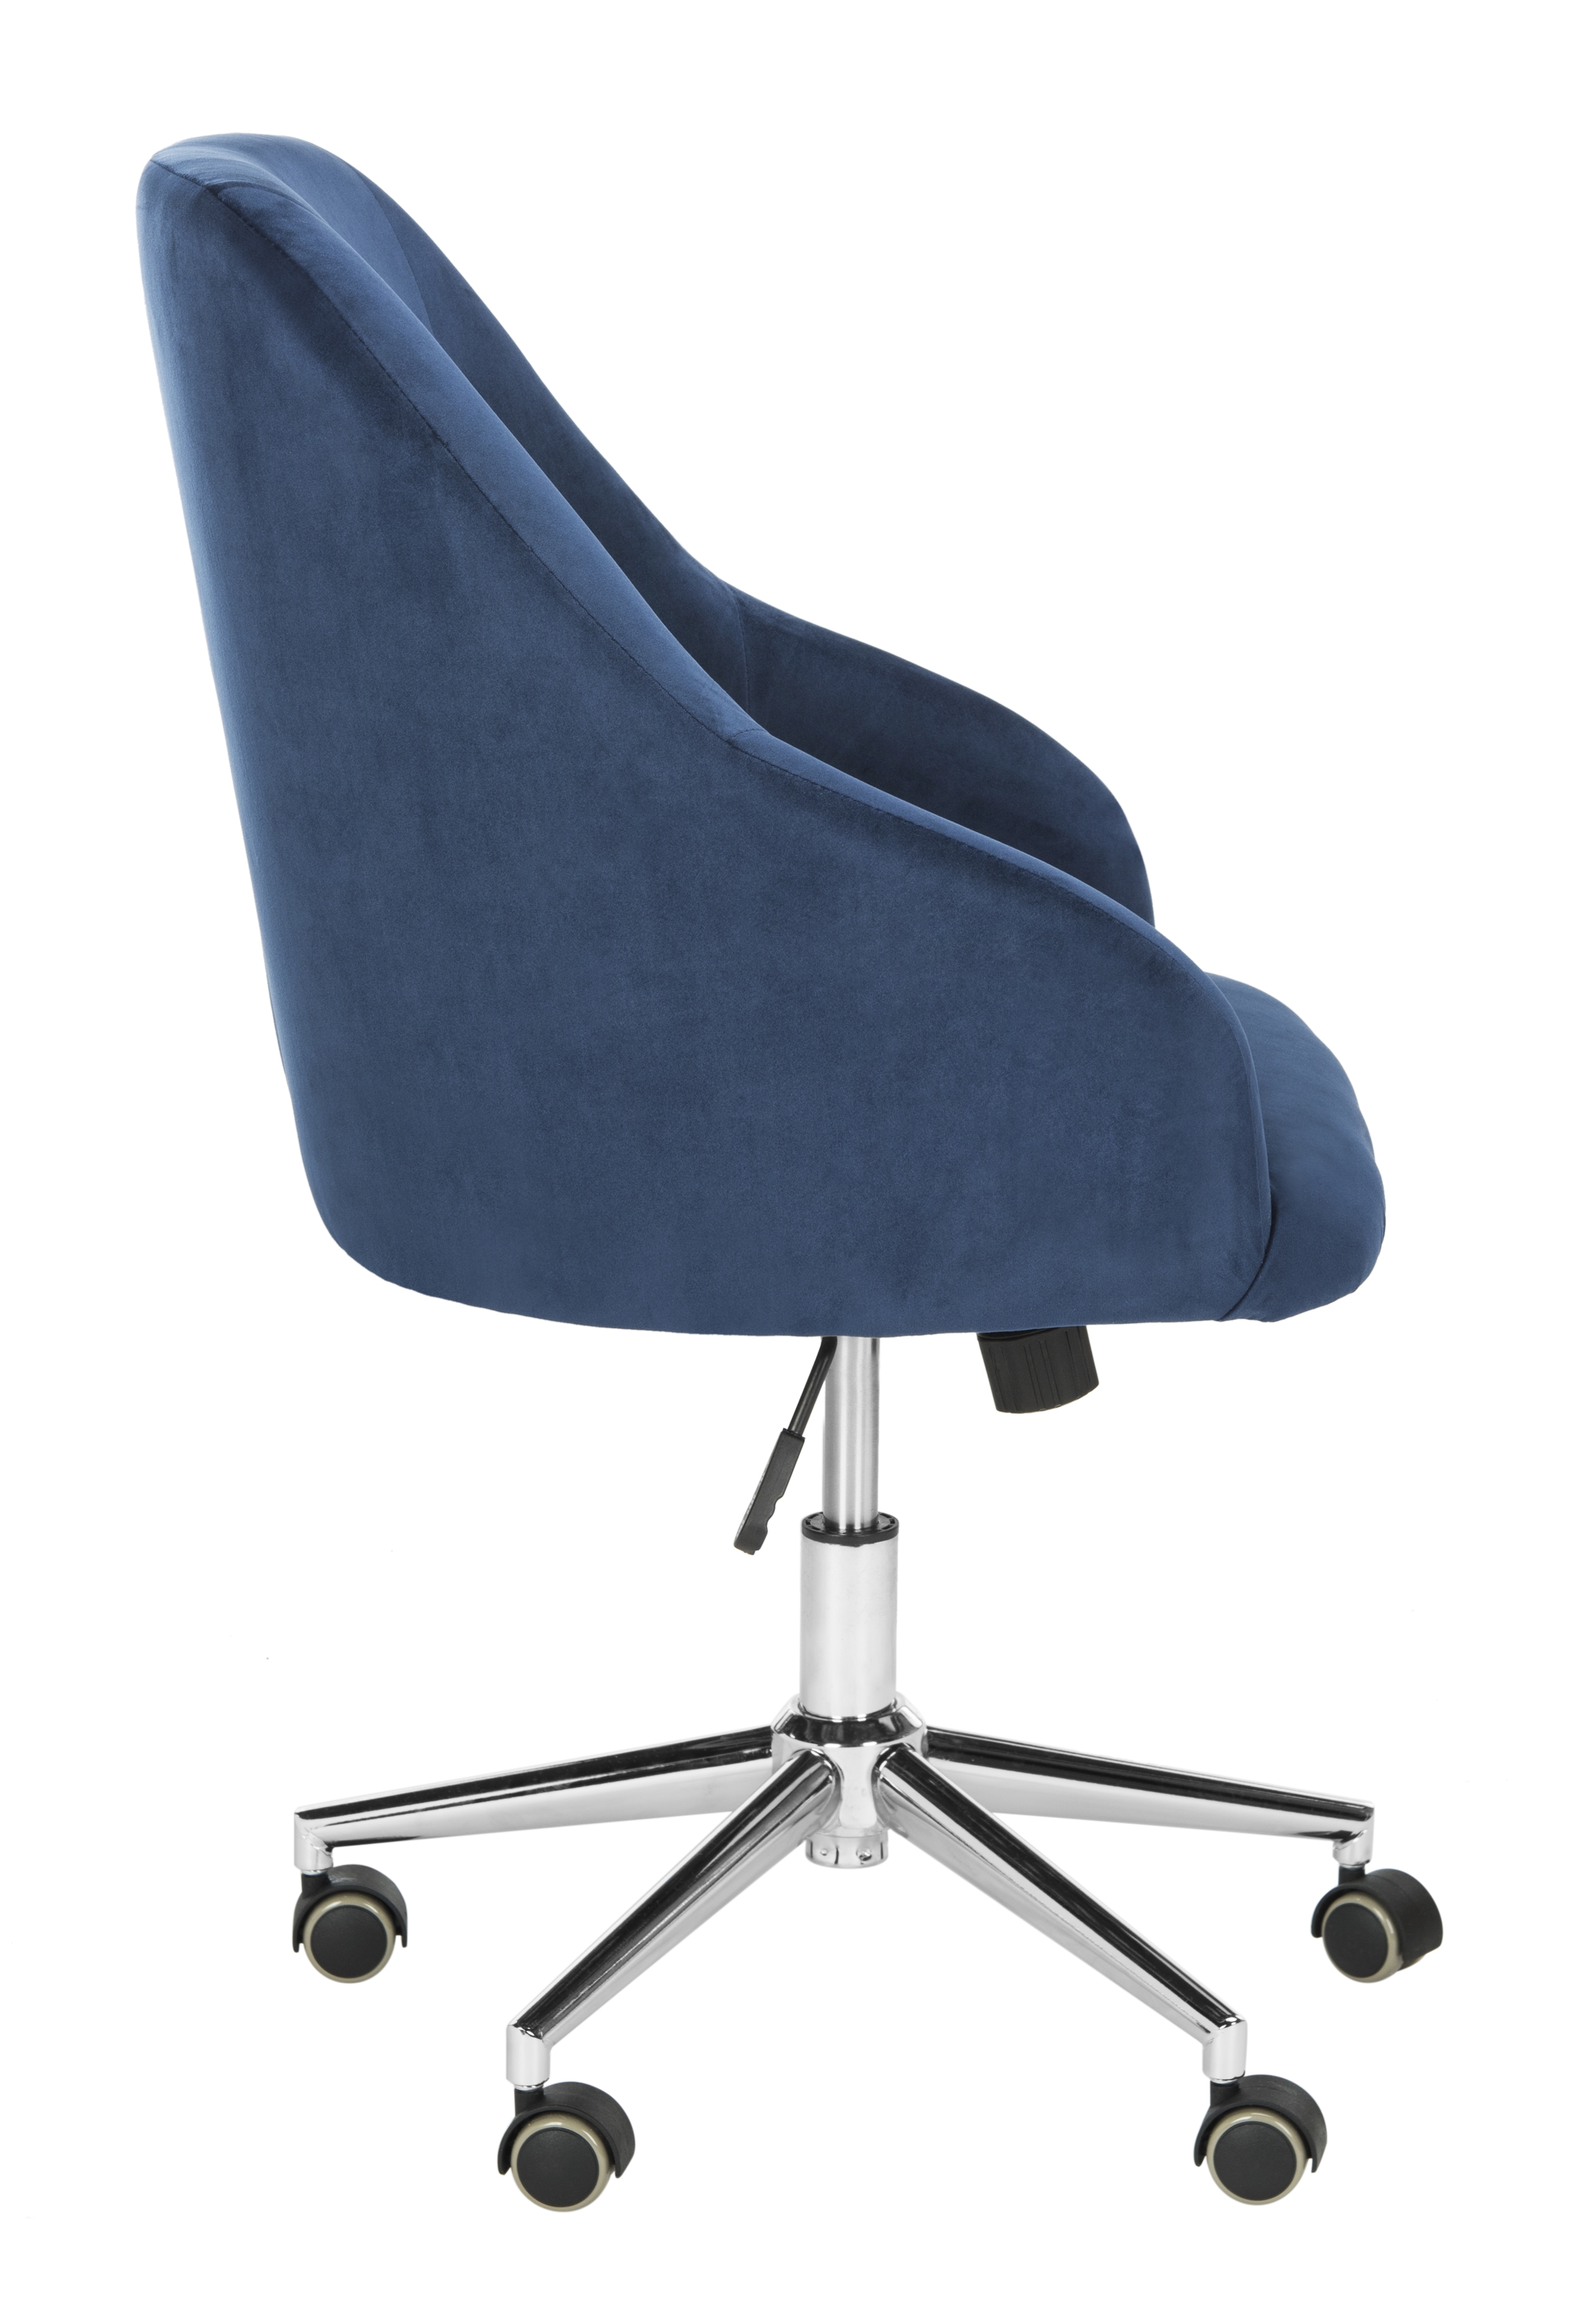 Adrienne Velvet Chrome Leg Swivel Office Chair - Navy/Chrome - Arlo Home - Image 2